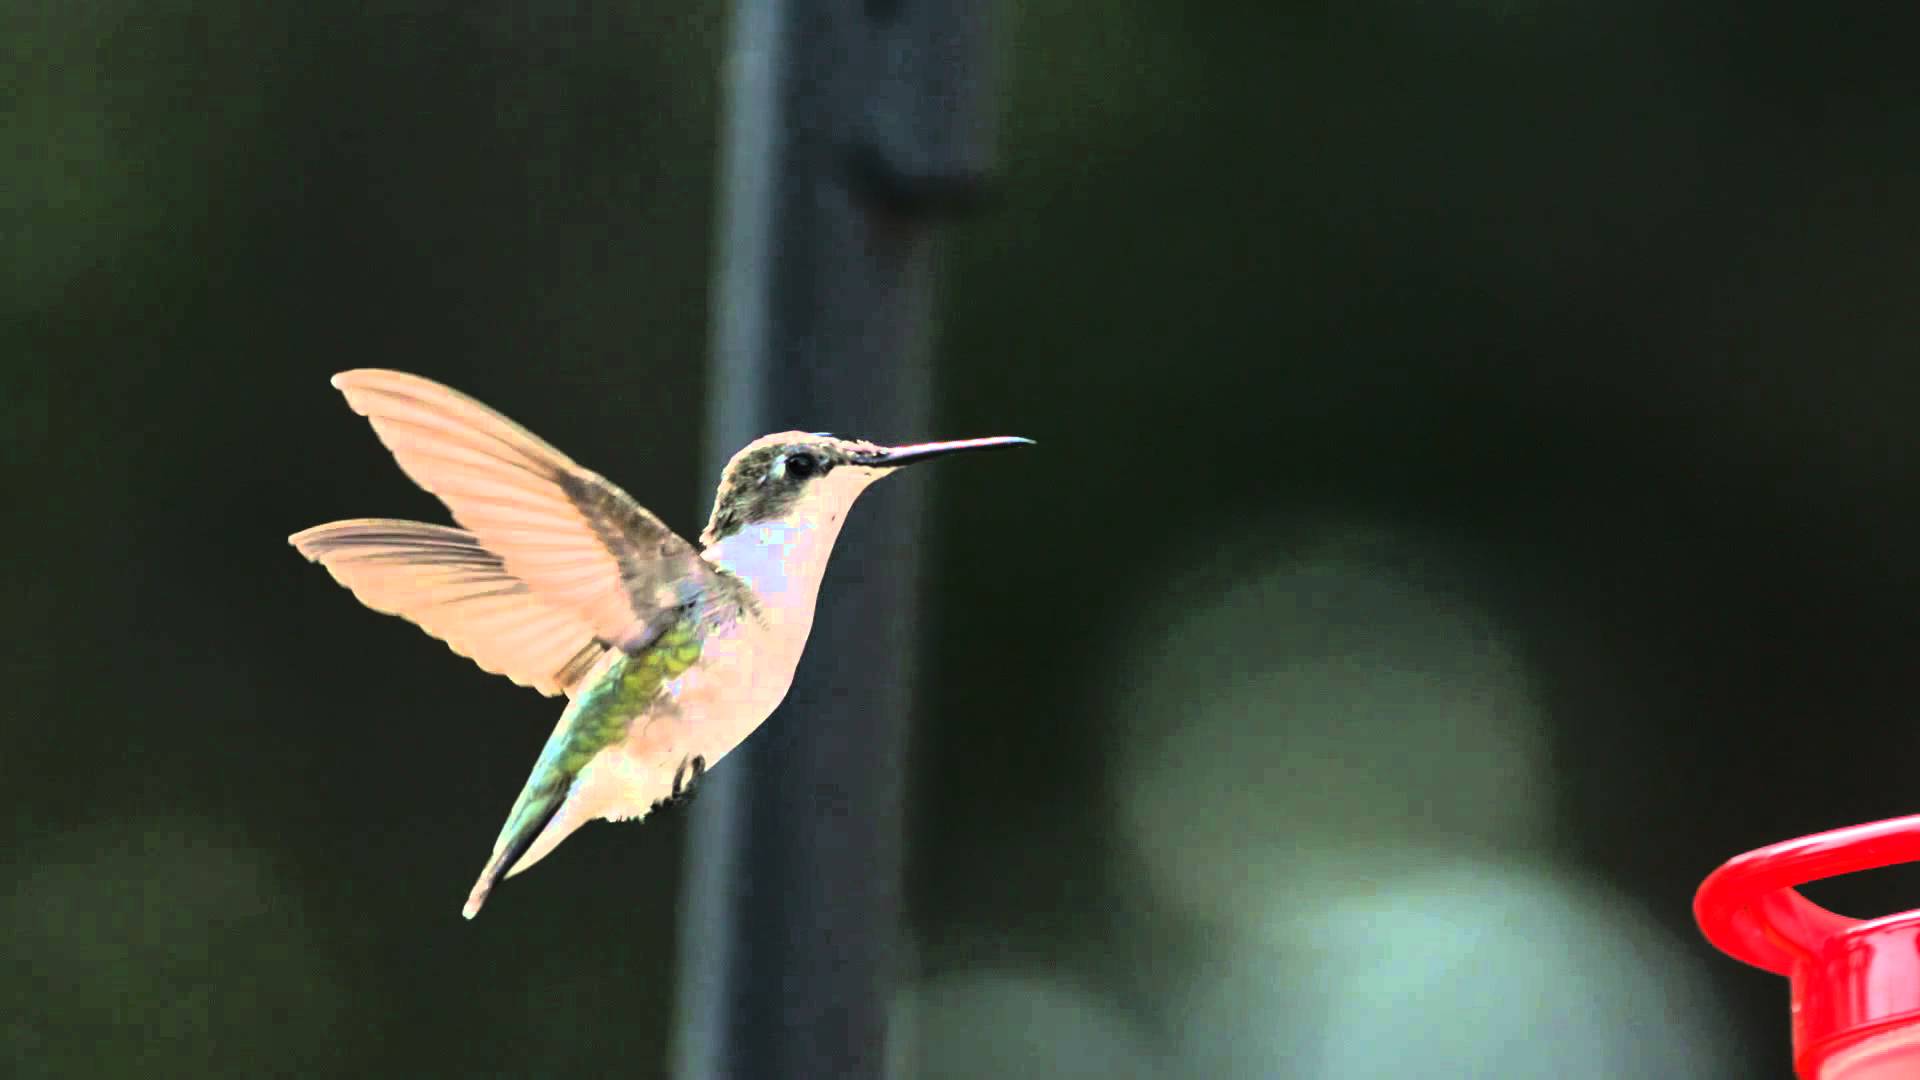 Super Slow Motion Hummingbird HD Flight Video Hovering at Bird ...